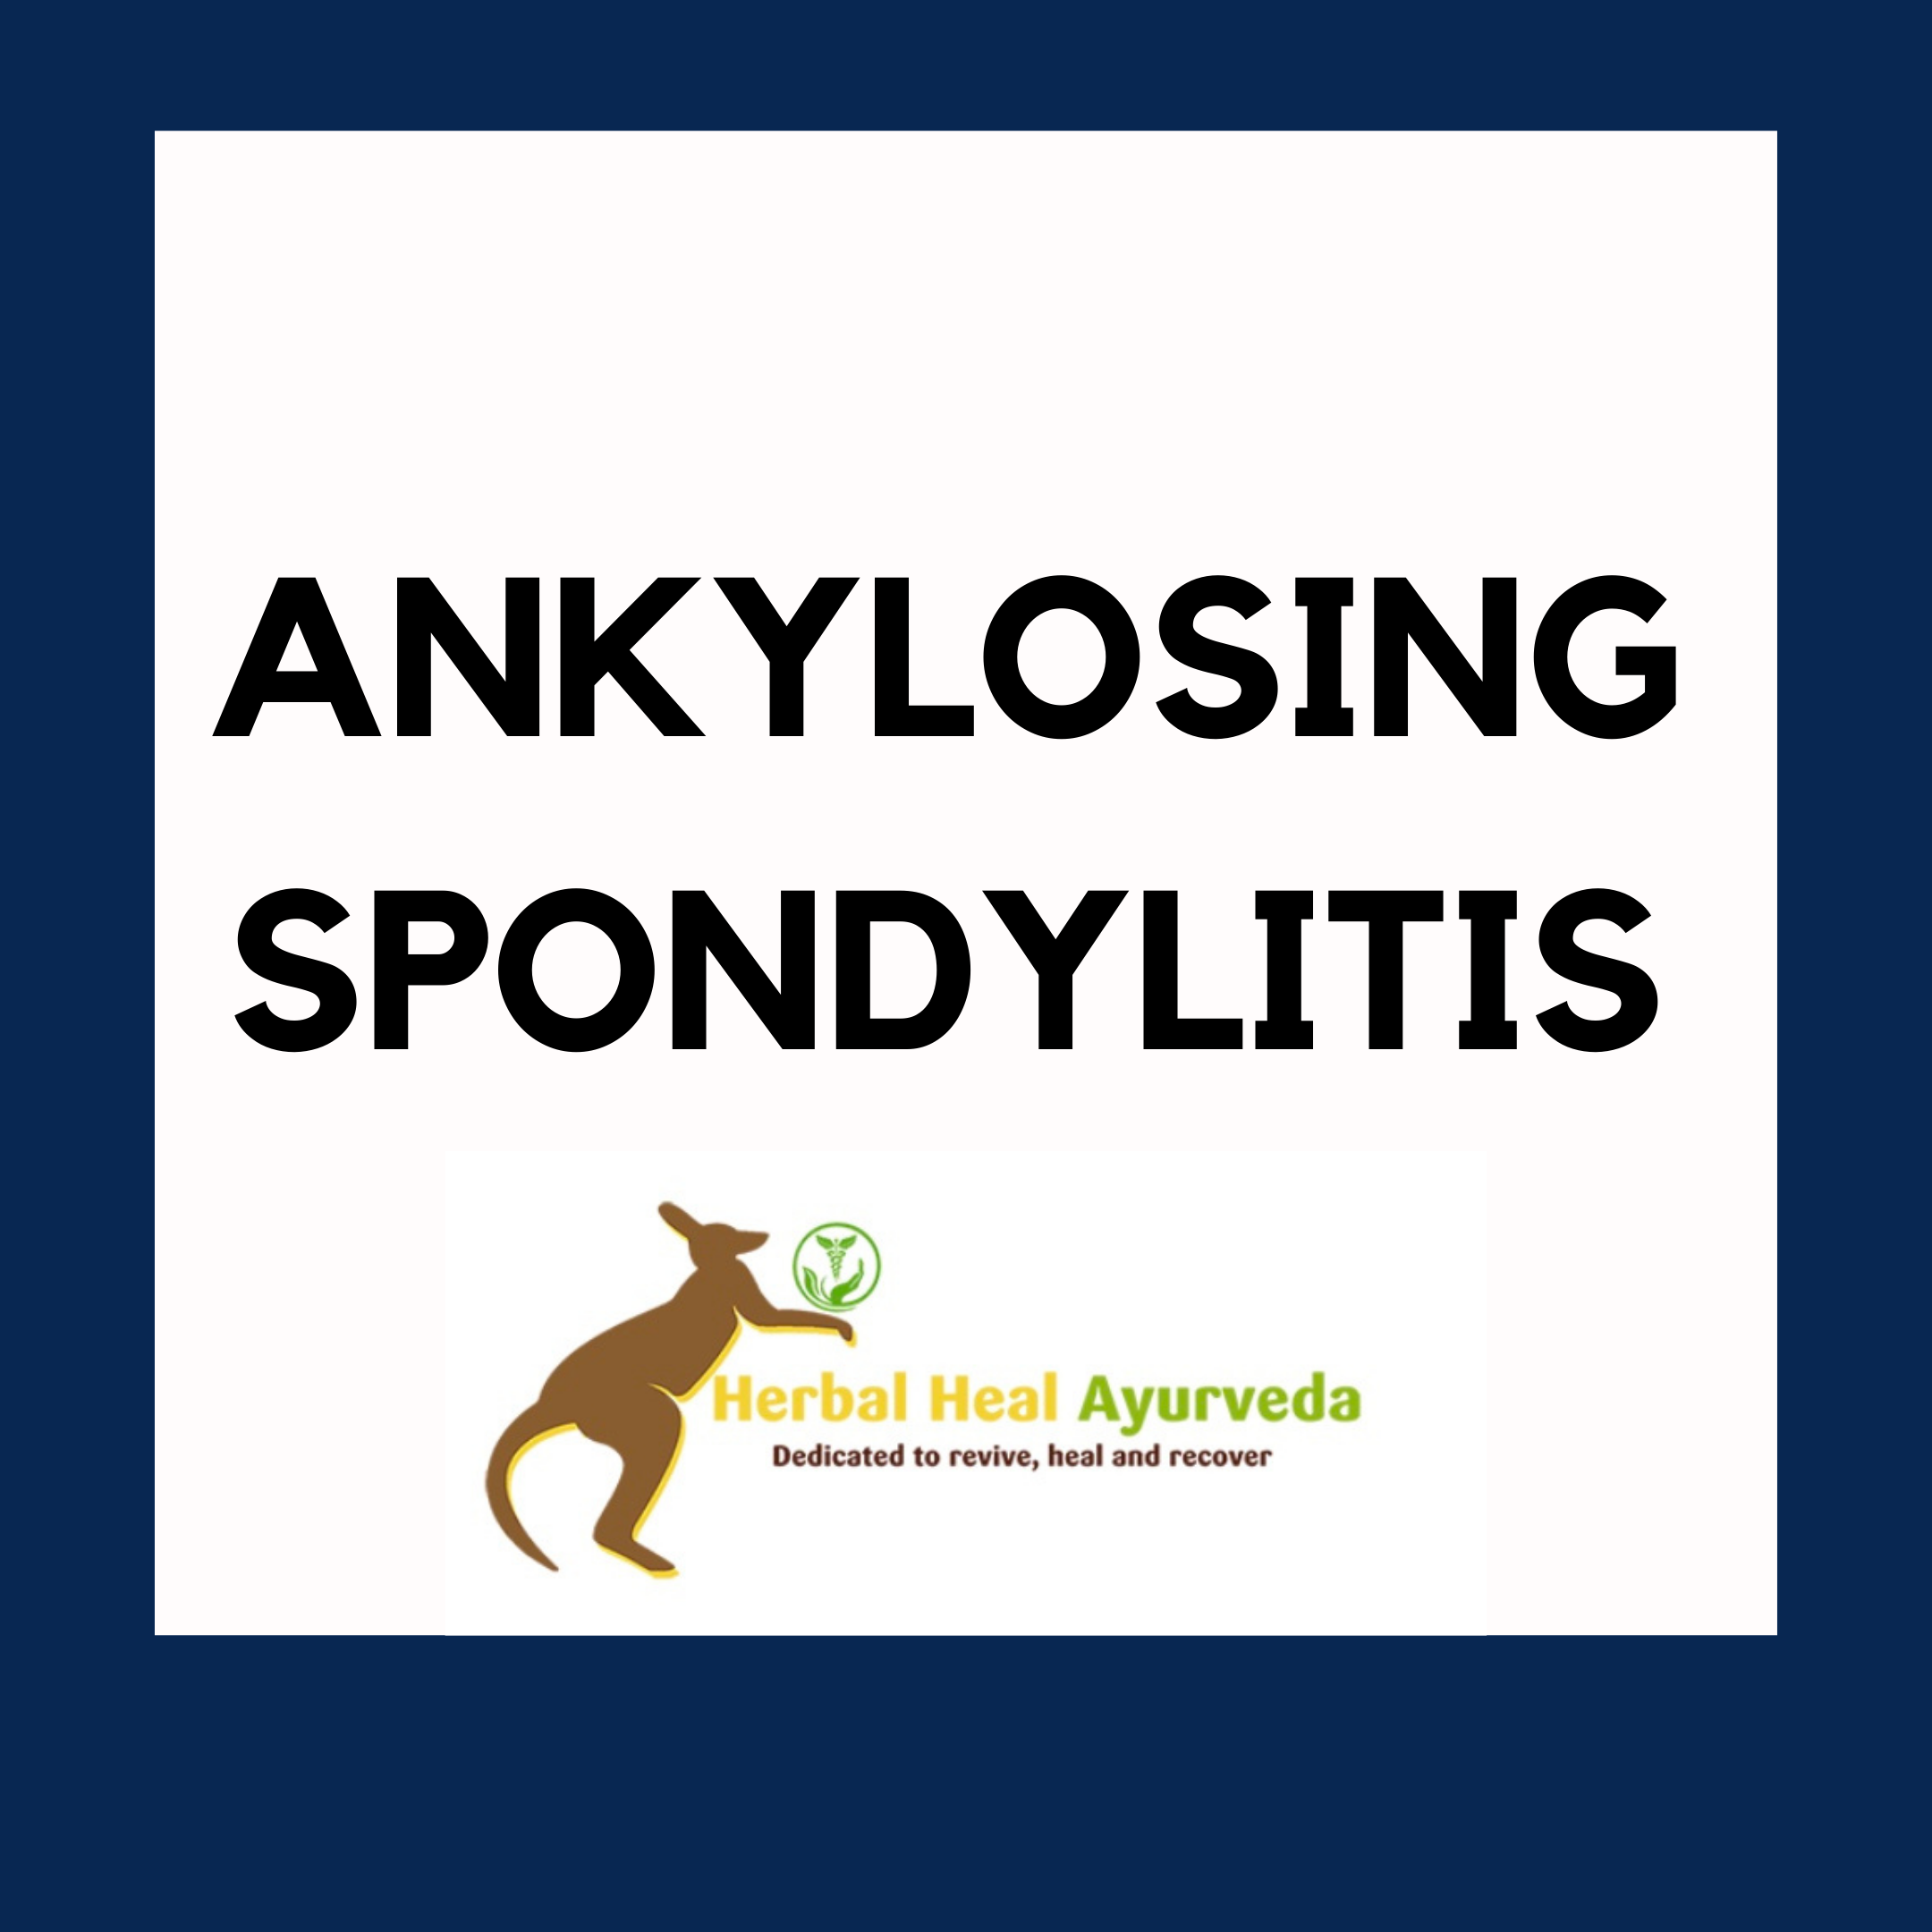  Herbal Heal Ayurveda Sydney-Ankylosing spondylitis 